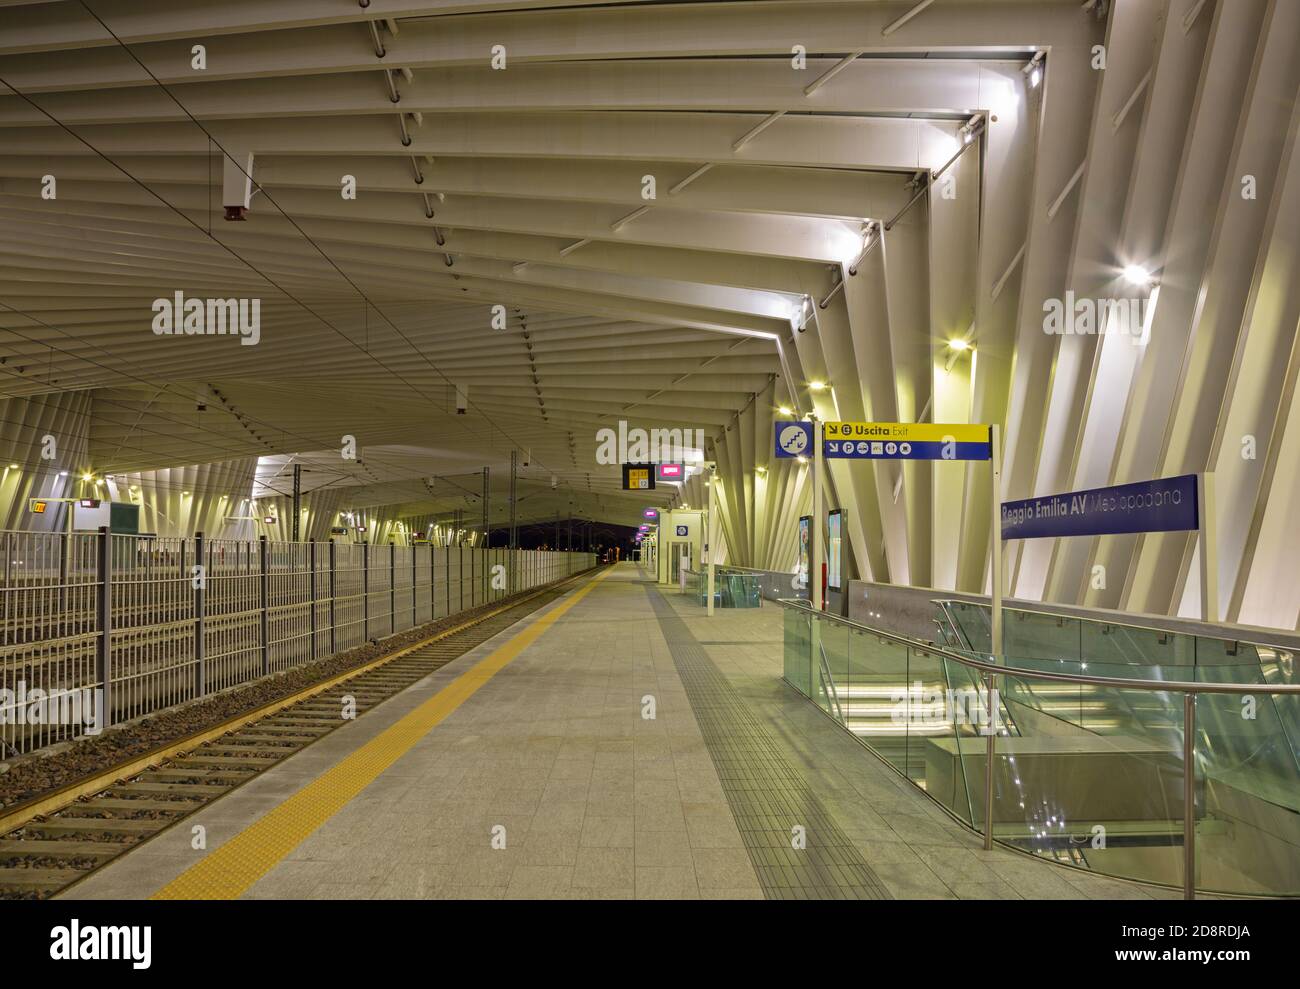 REGGIO EMILIA, Italia - 13 Aprile 2018: Reggio Emilia AV Mediopadana stazione ferroviaria al crepuscolo dell'architetto Santiago Calatrava. Foto Stock